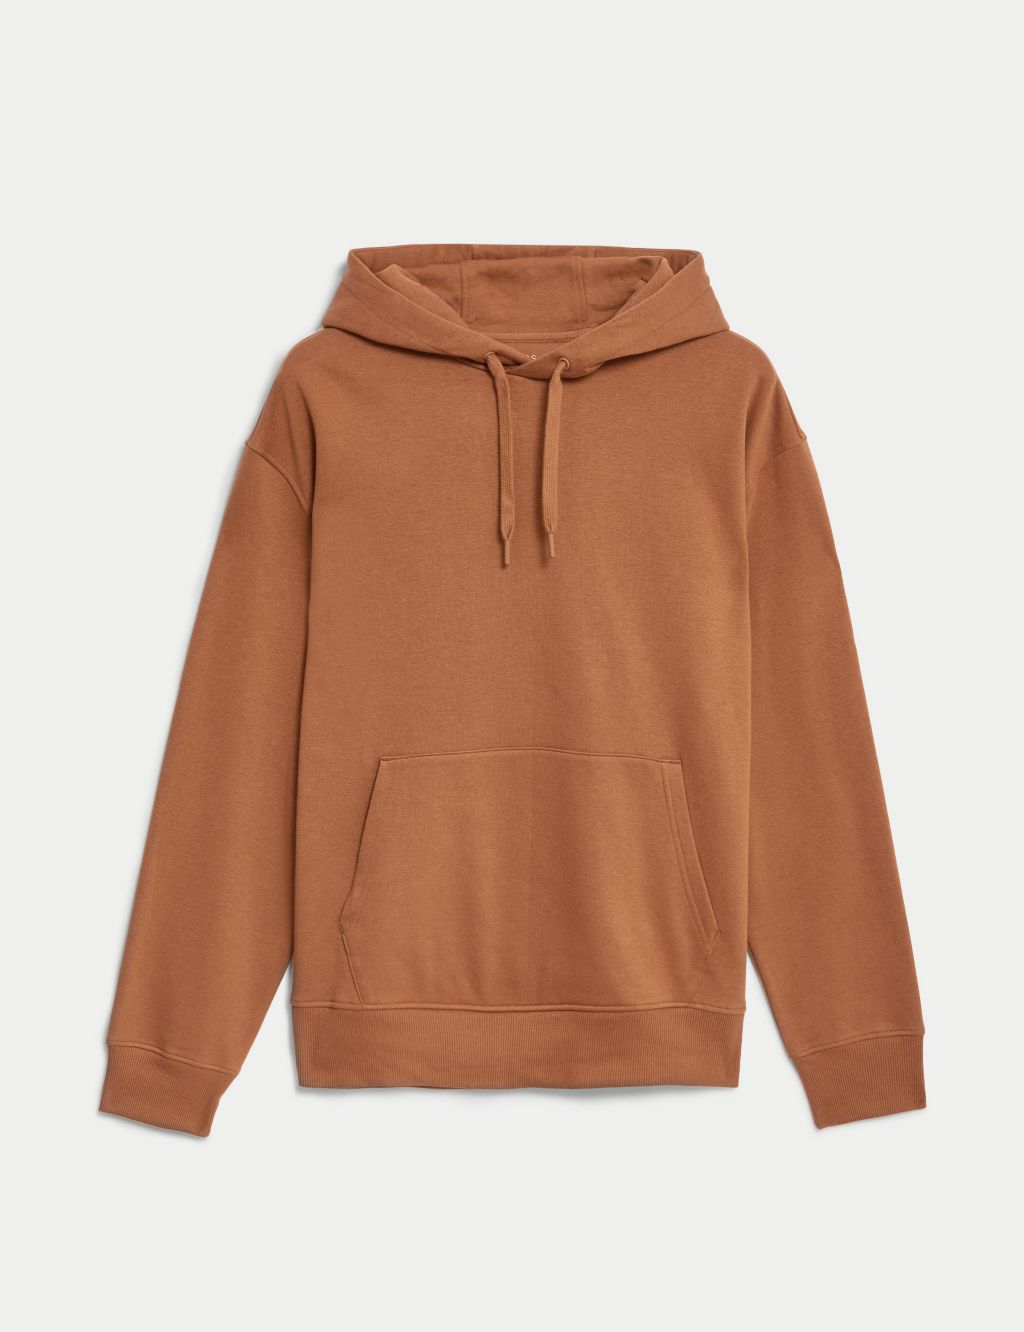 orange graphic hoodie,brown sweatshirt men,purple sweatshirt mens,thermal  hoodie mens,black full zip hoodie,hooded sweatshirts with zipper,mens grey